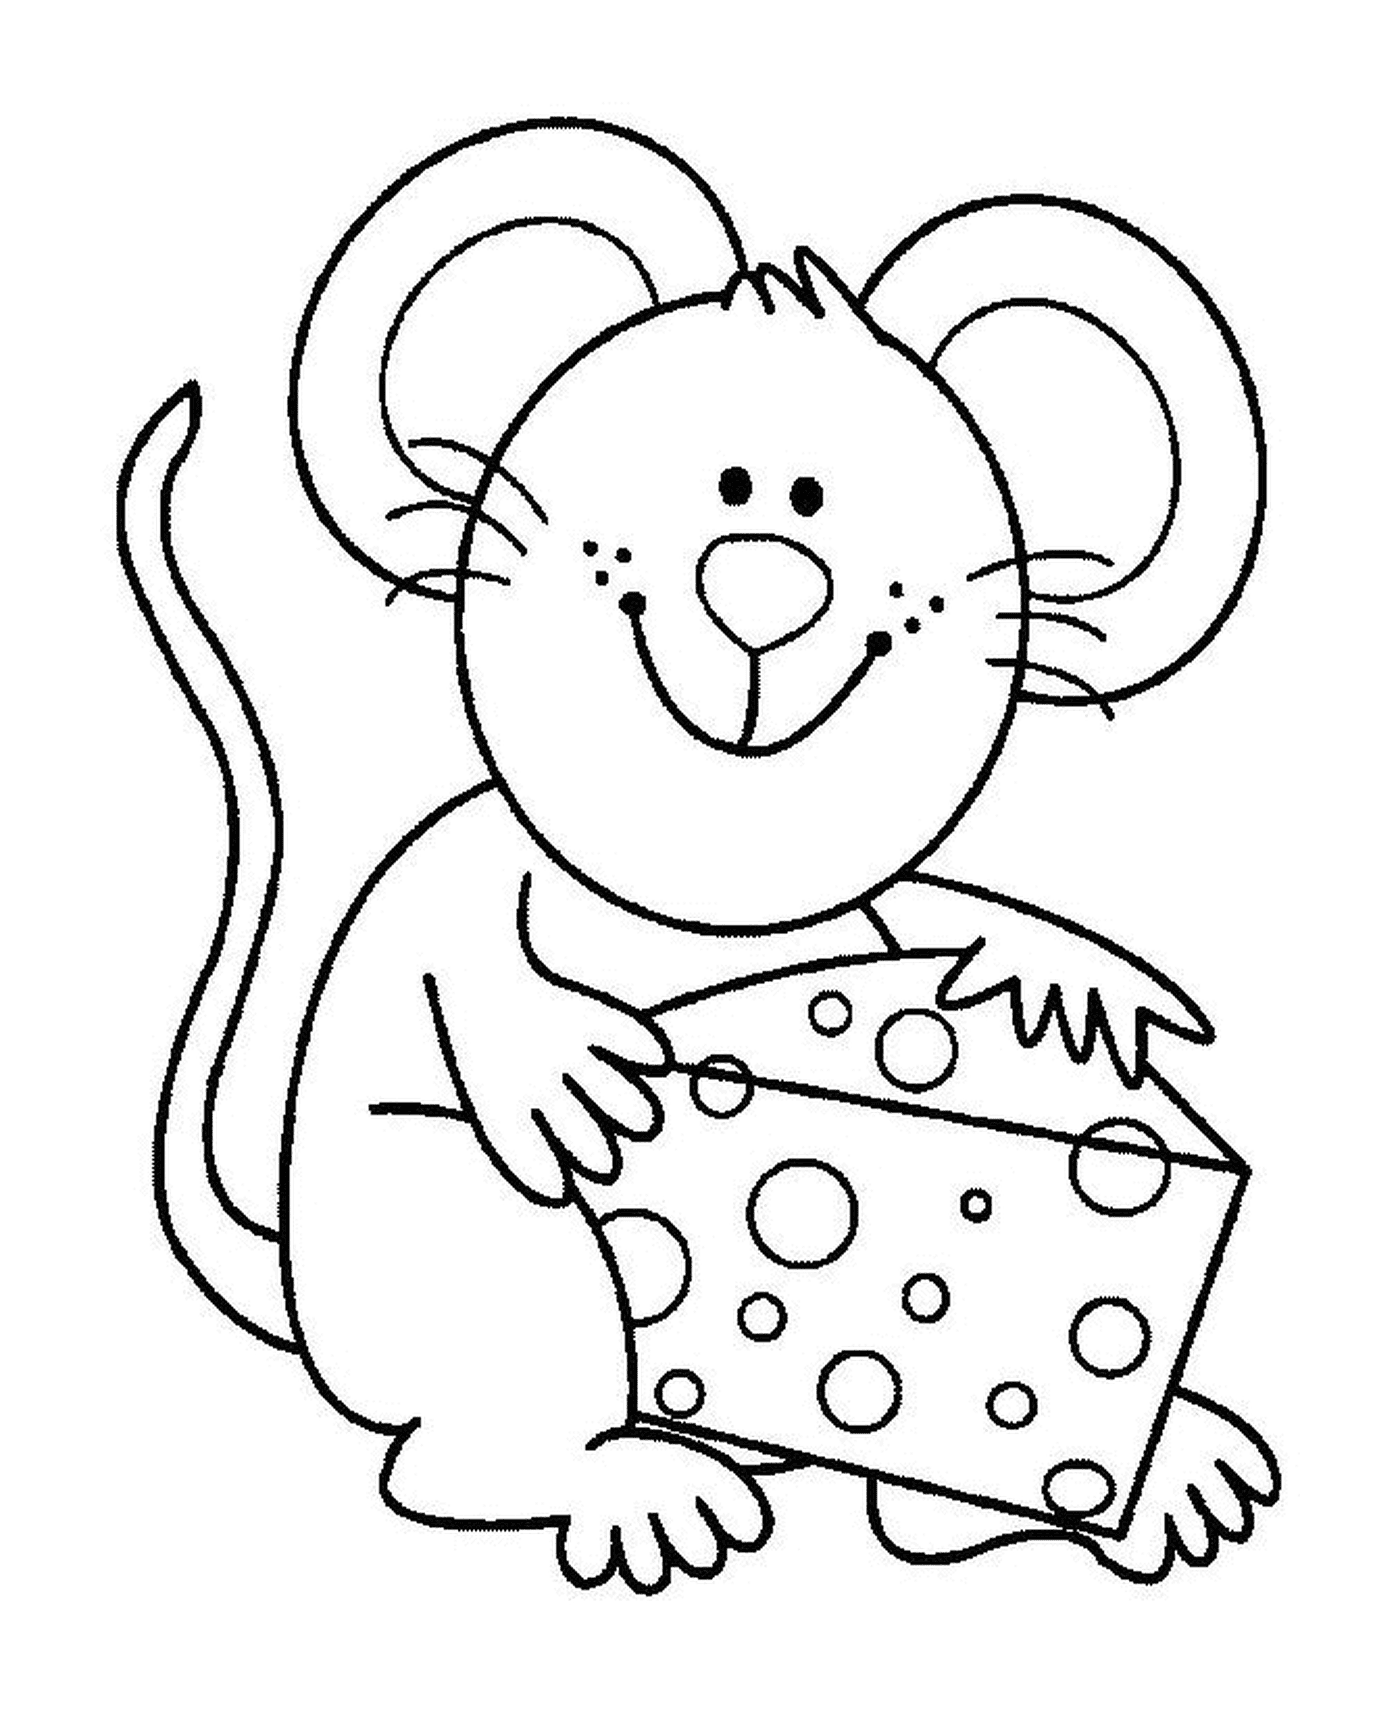  Um rato com queijo bom 